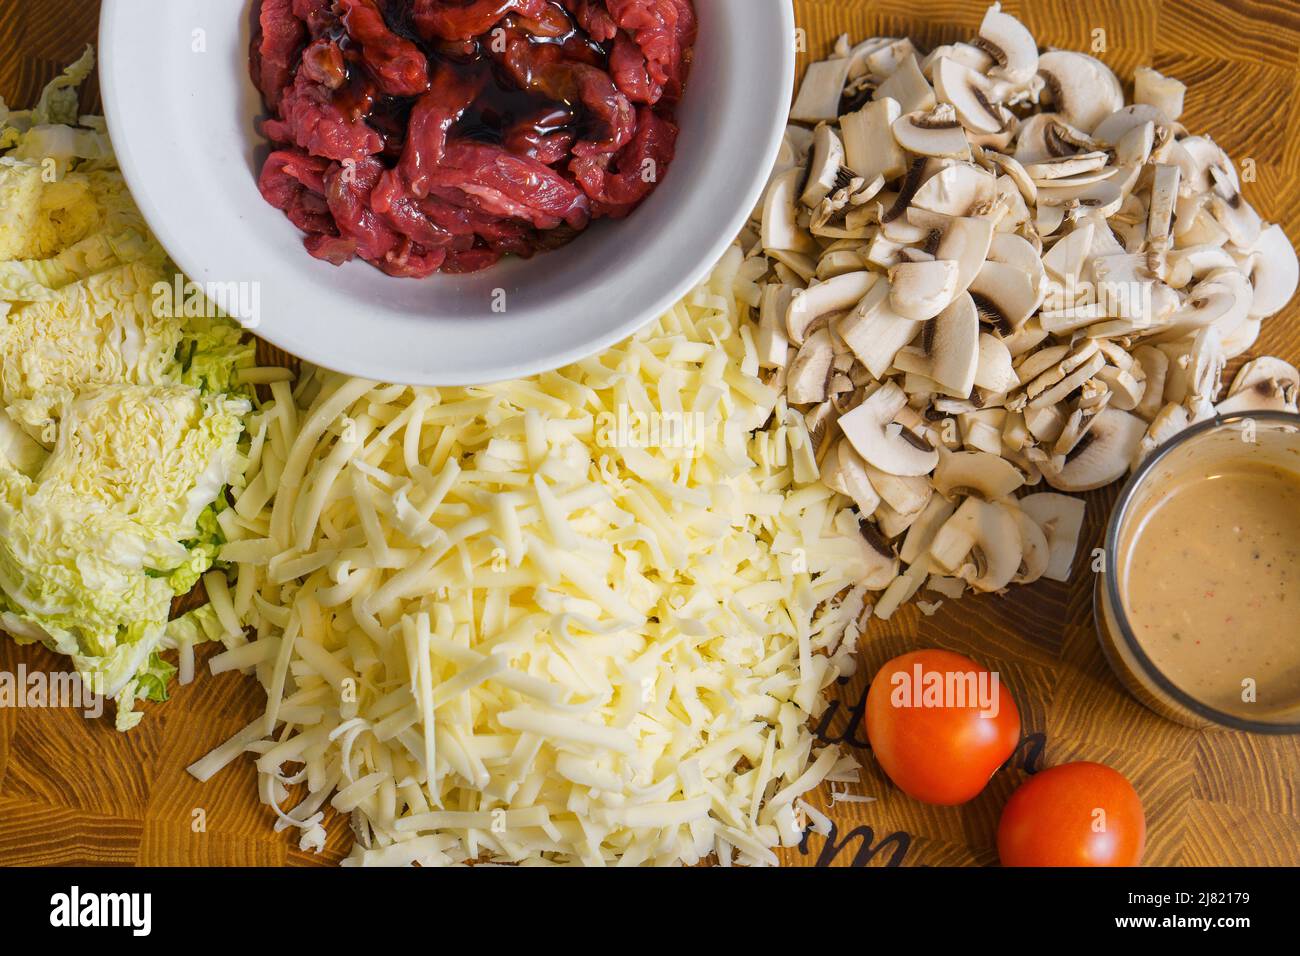 Ingrédients pour la cuisson de tacos sautés ou quesadilla à base de viande, champignons, salade, fromage et tomates Banque D'Images